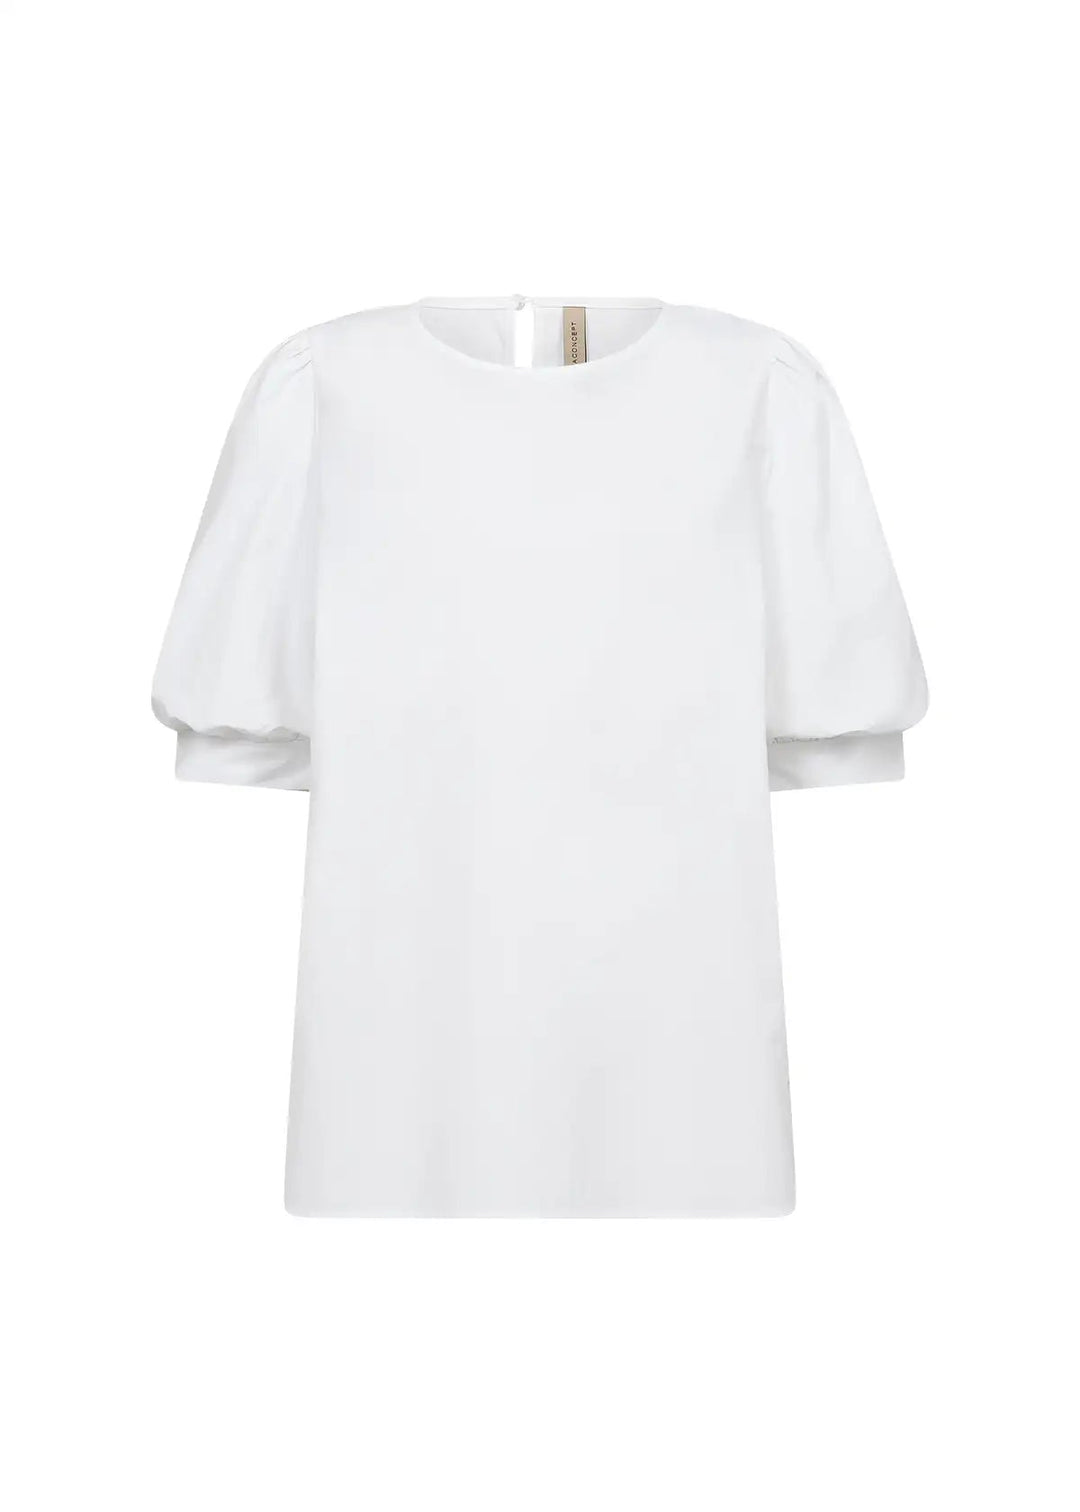 Sc-Netti 67 White | Skjorter og bluser | Smuk - Dameklær på nett